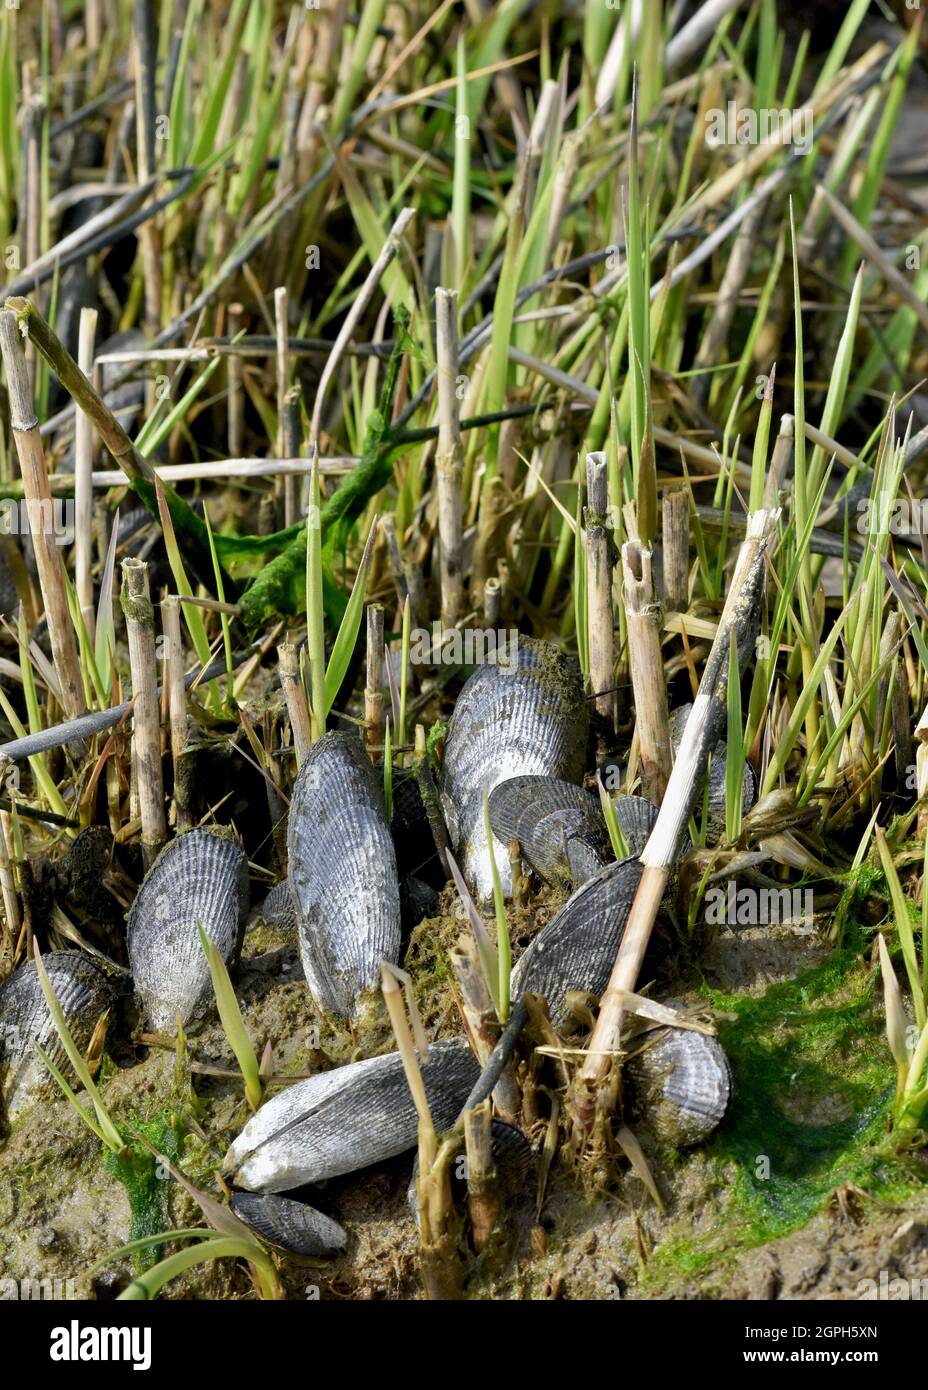 Les moules striées (Geukensia demissa) et l'herbe à corde (Spartina alterniflora) ont une synergie qui aide à construire des marais salants et les maintient résistants. Banque D'Images